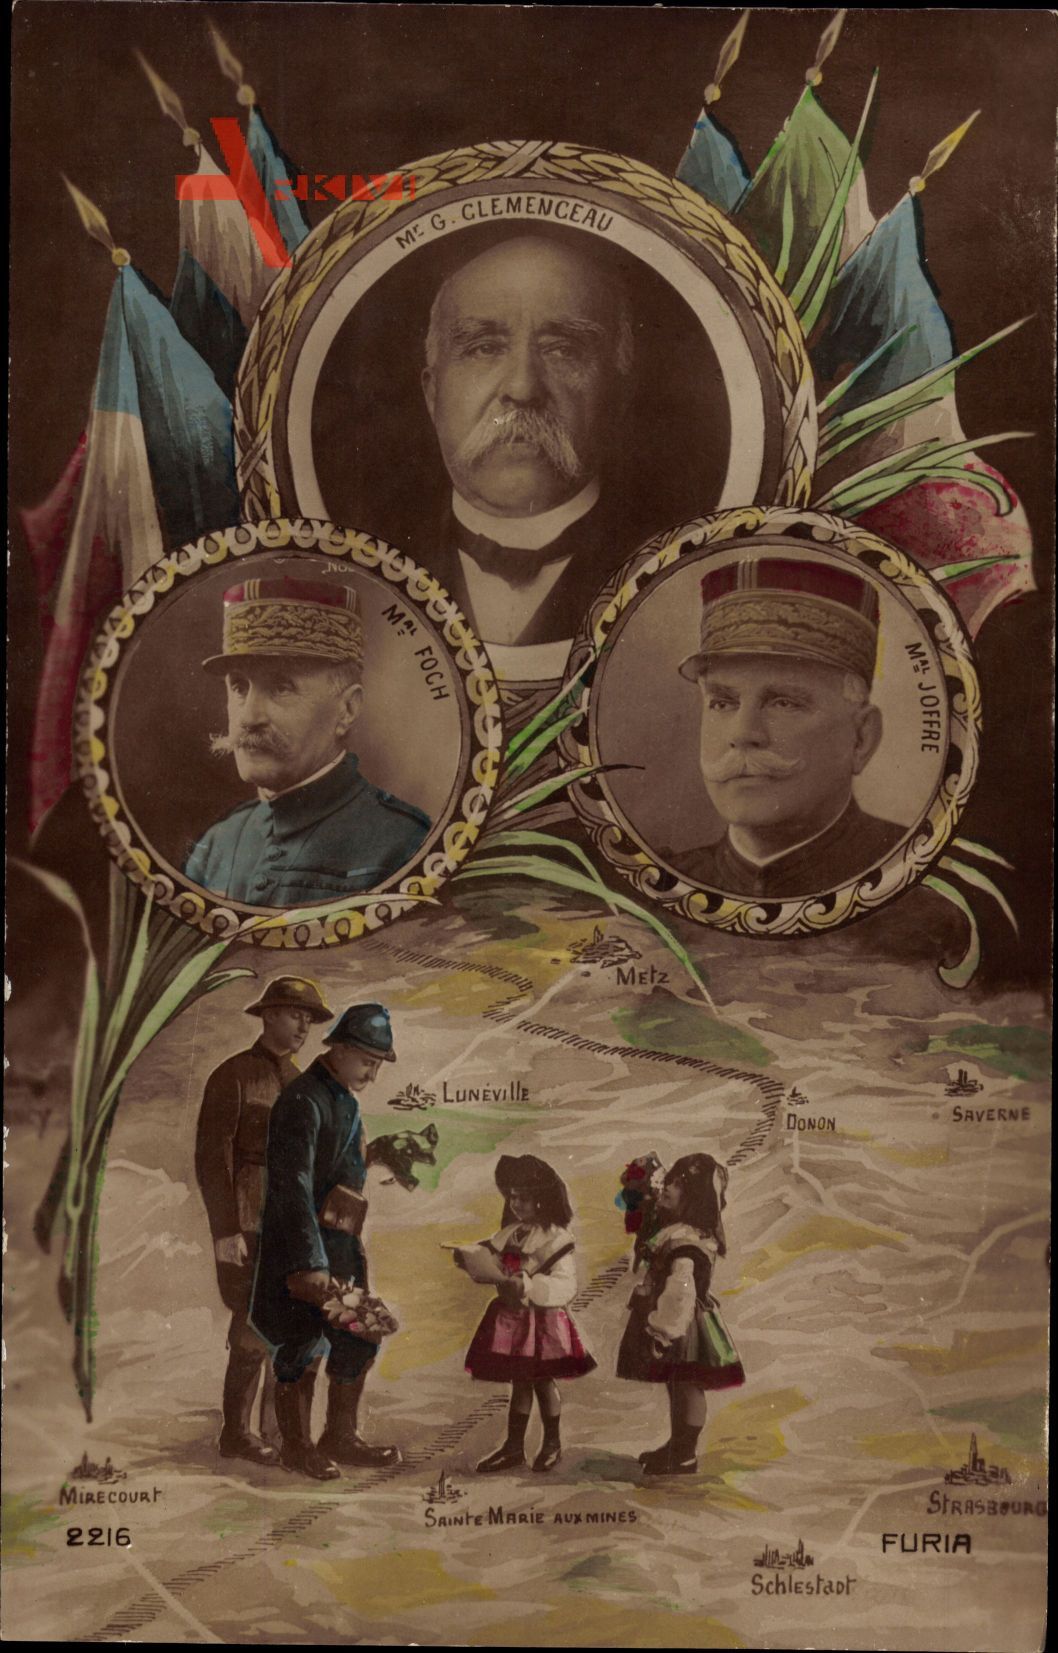 Georges Clemenceau, Maréchal Foch, Maréchal Joffre